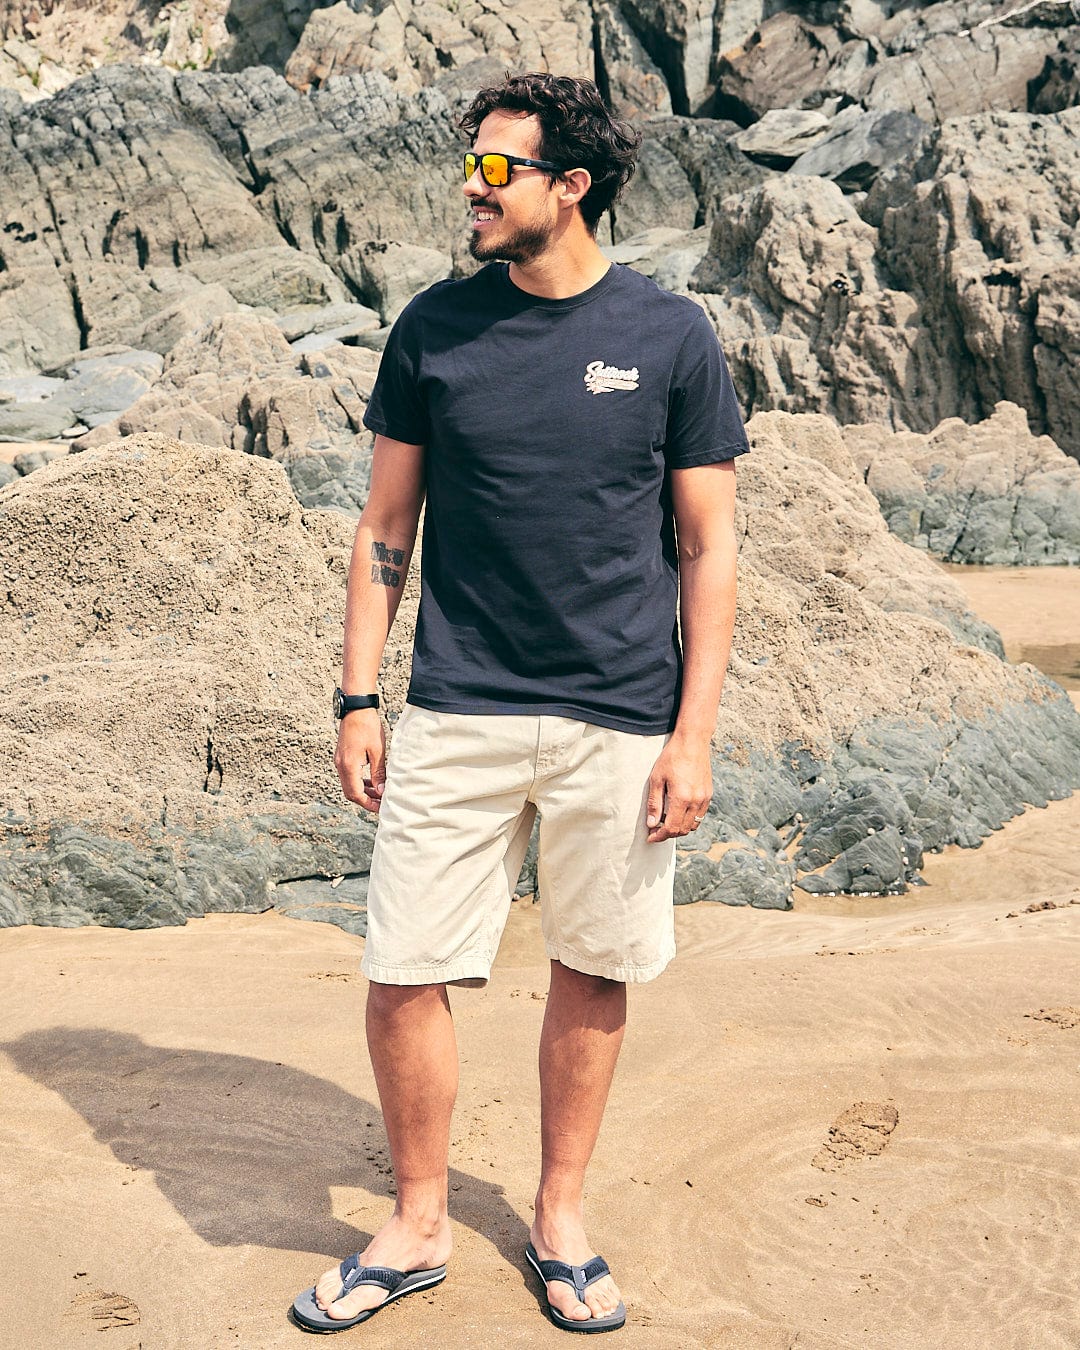 A man standing on a beach with a Saltrock - Beach Sign Wales - Mens - Short Sleeve T-Shirt - Dark Grey surfboard.